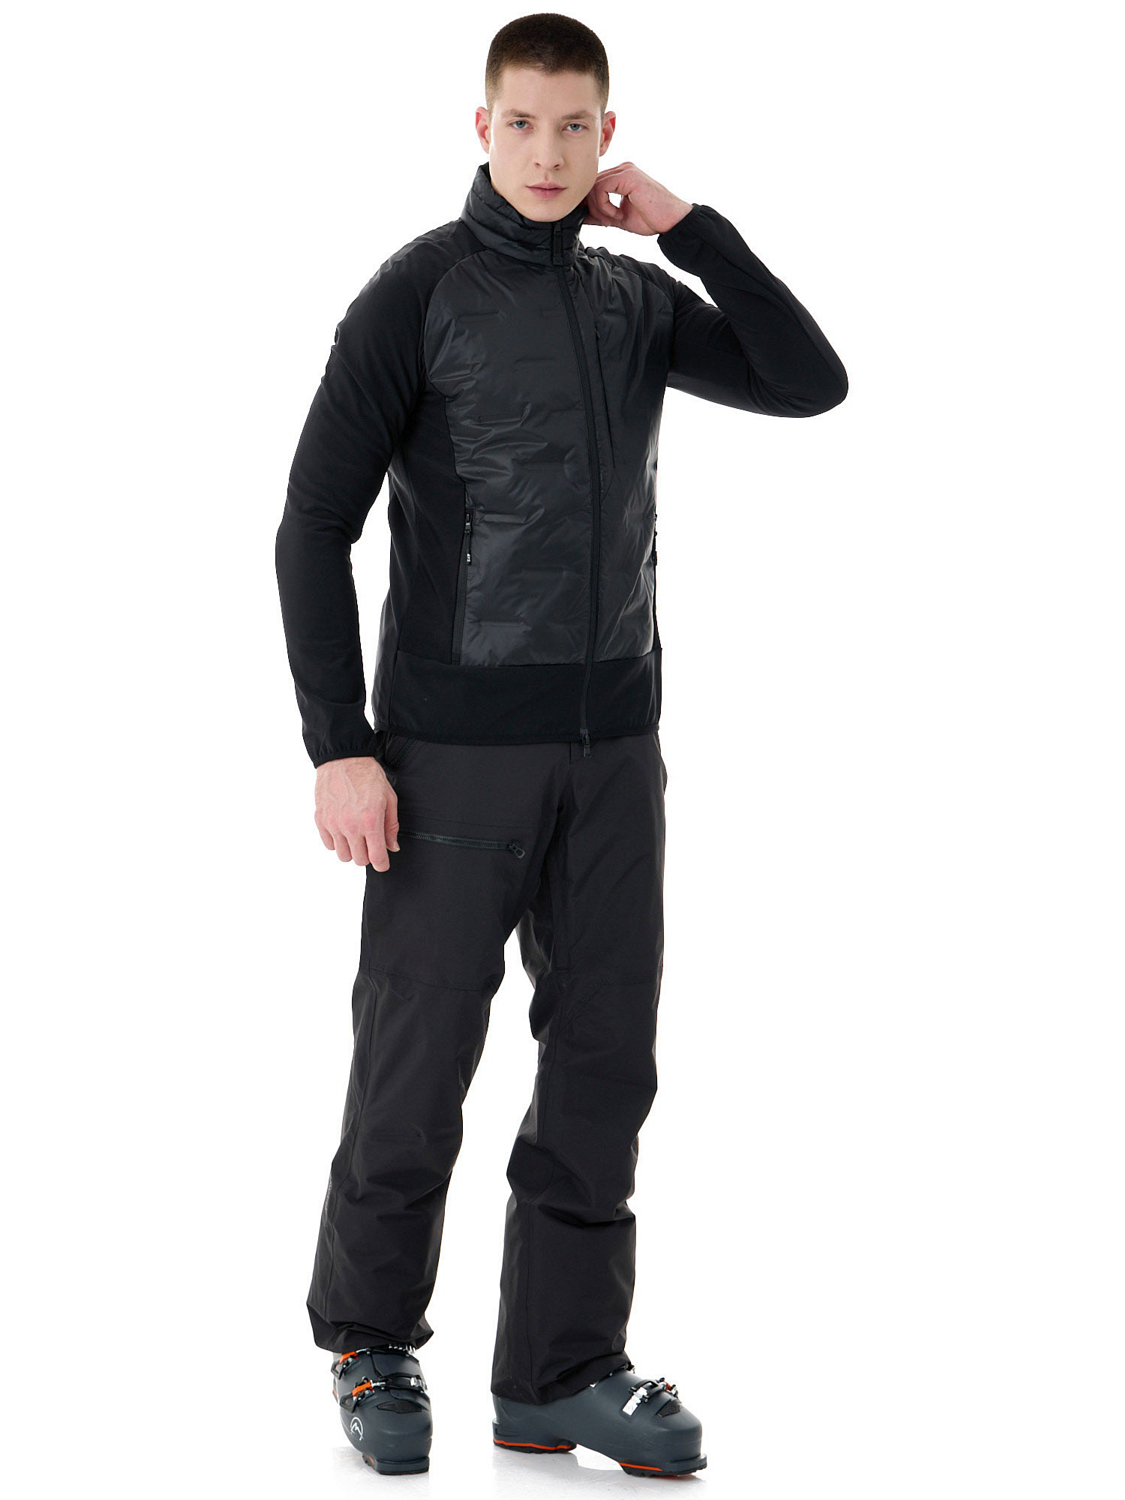 Куртка горнолыжная EA7 Emporio Armani Ski Kitzbuhel LT Padded T-Top Black